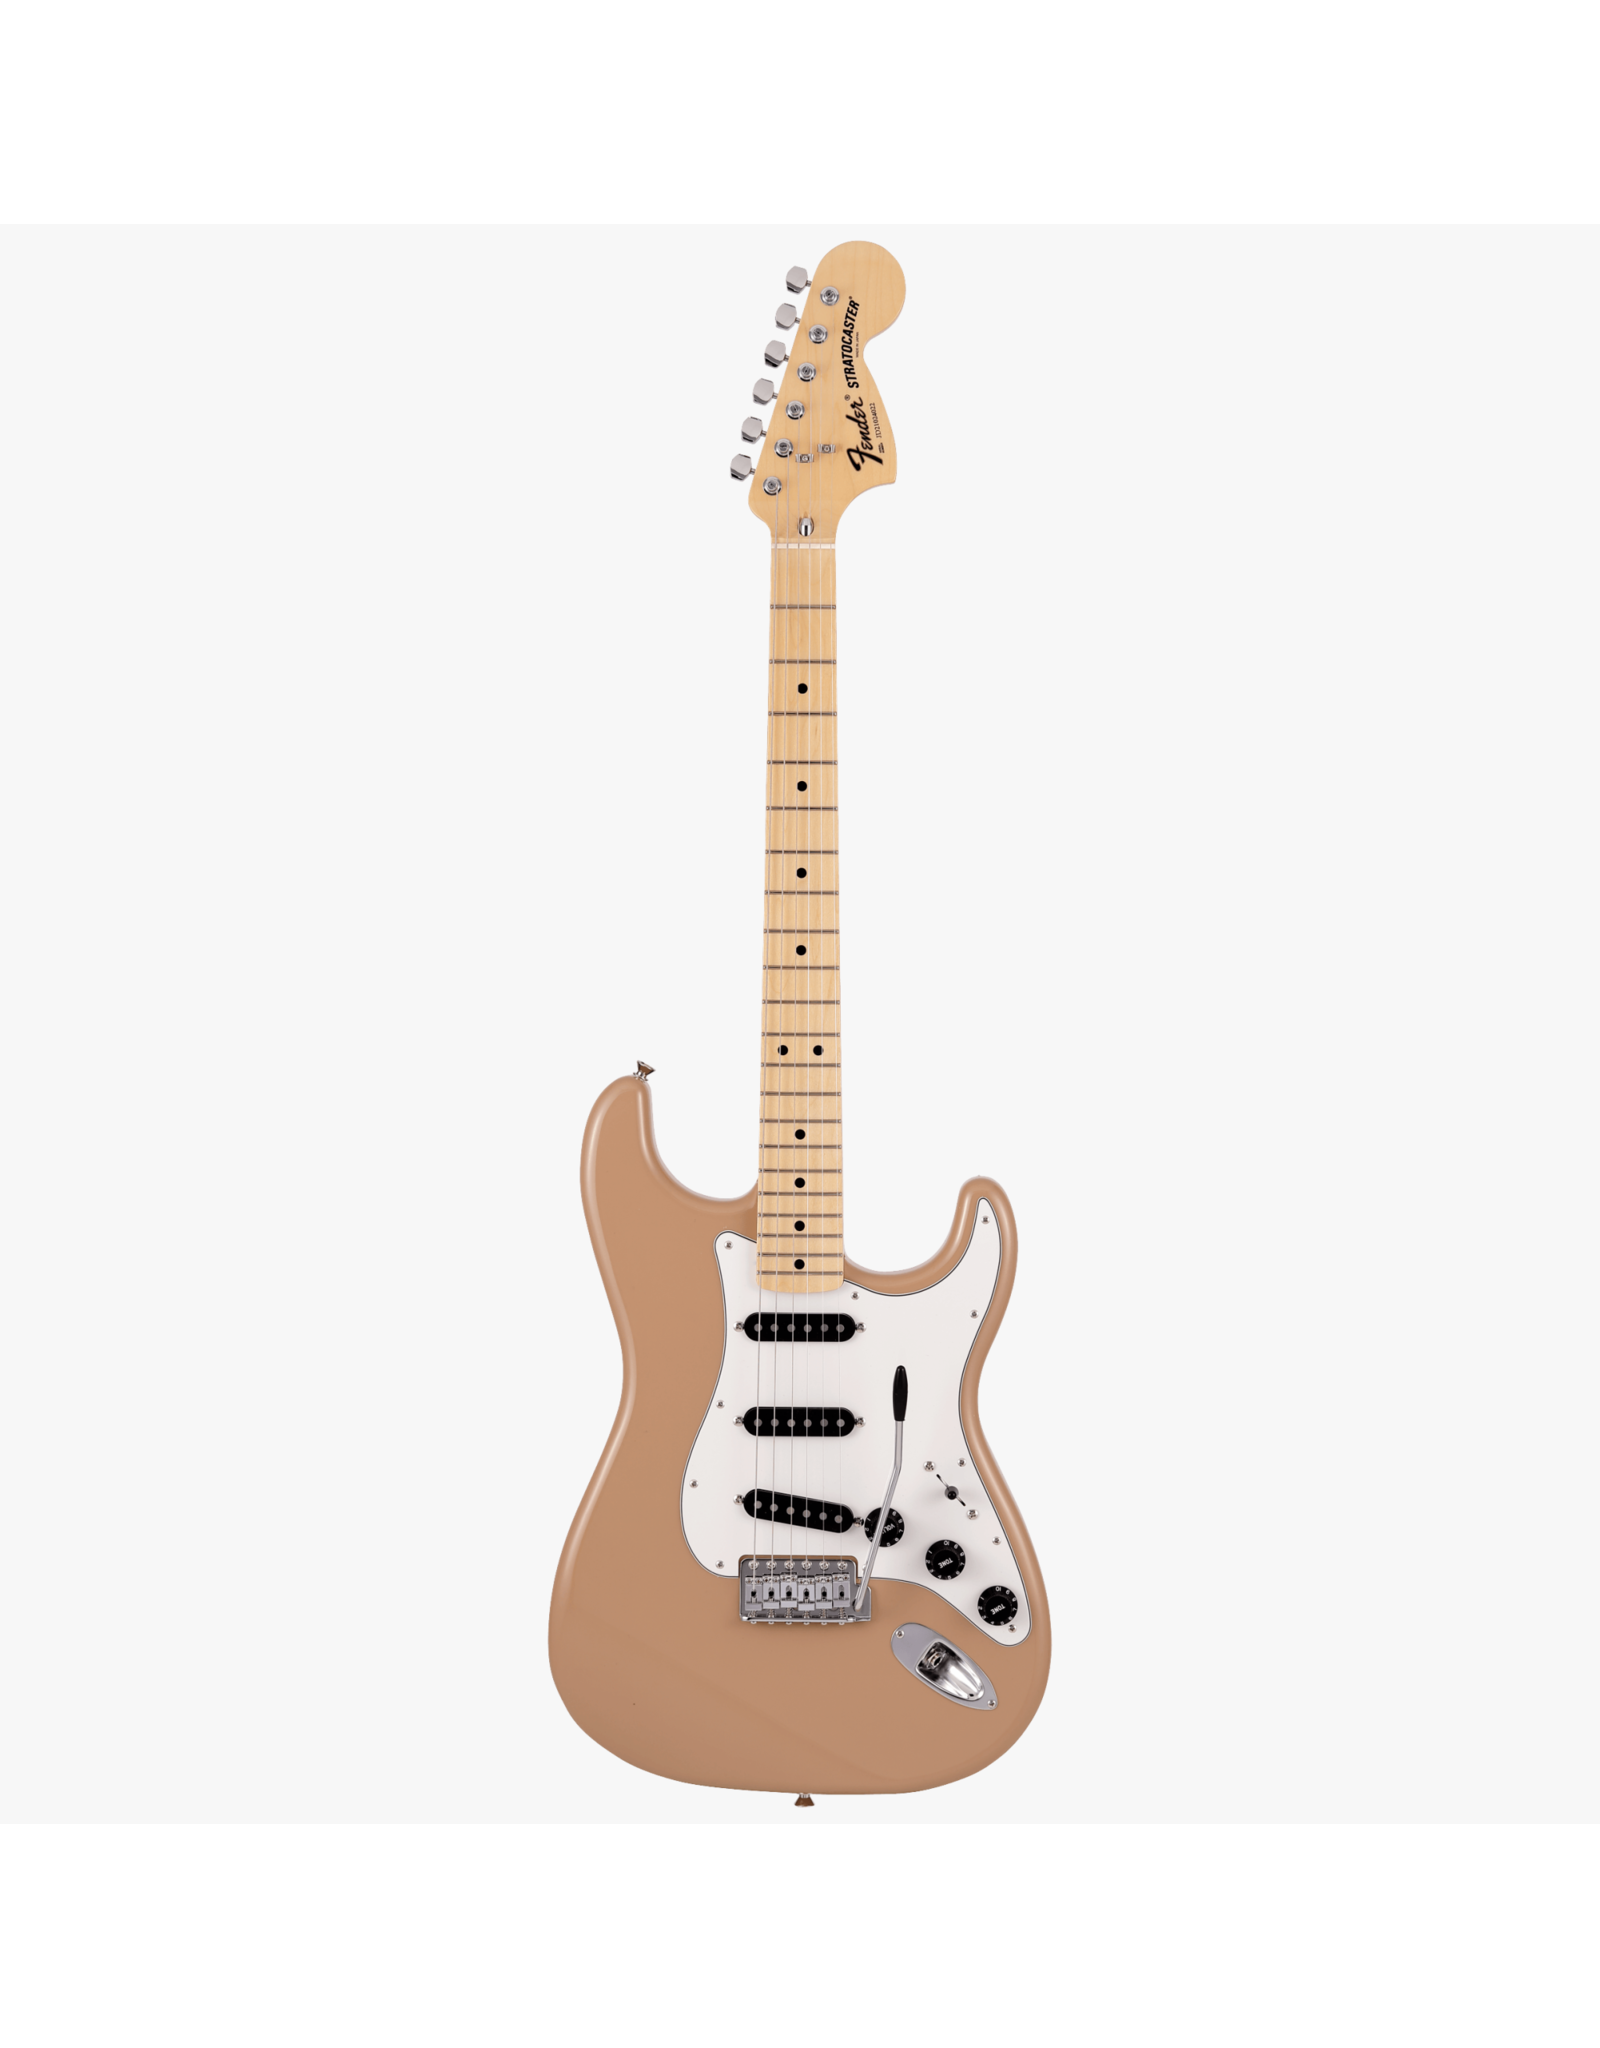 Fender Fender MIJ Limited International Color Stratocaster, Sahara Taupe, Maple Fingerboard w/ Gig Bag